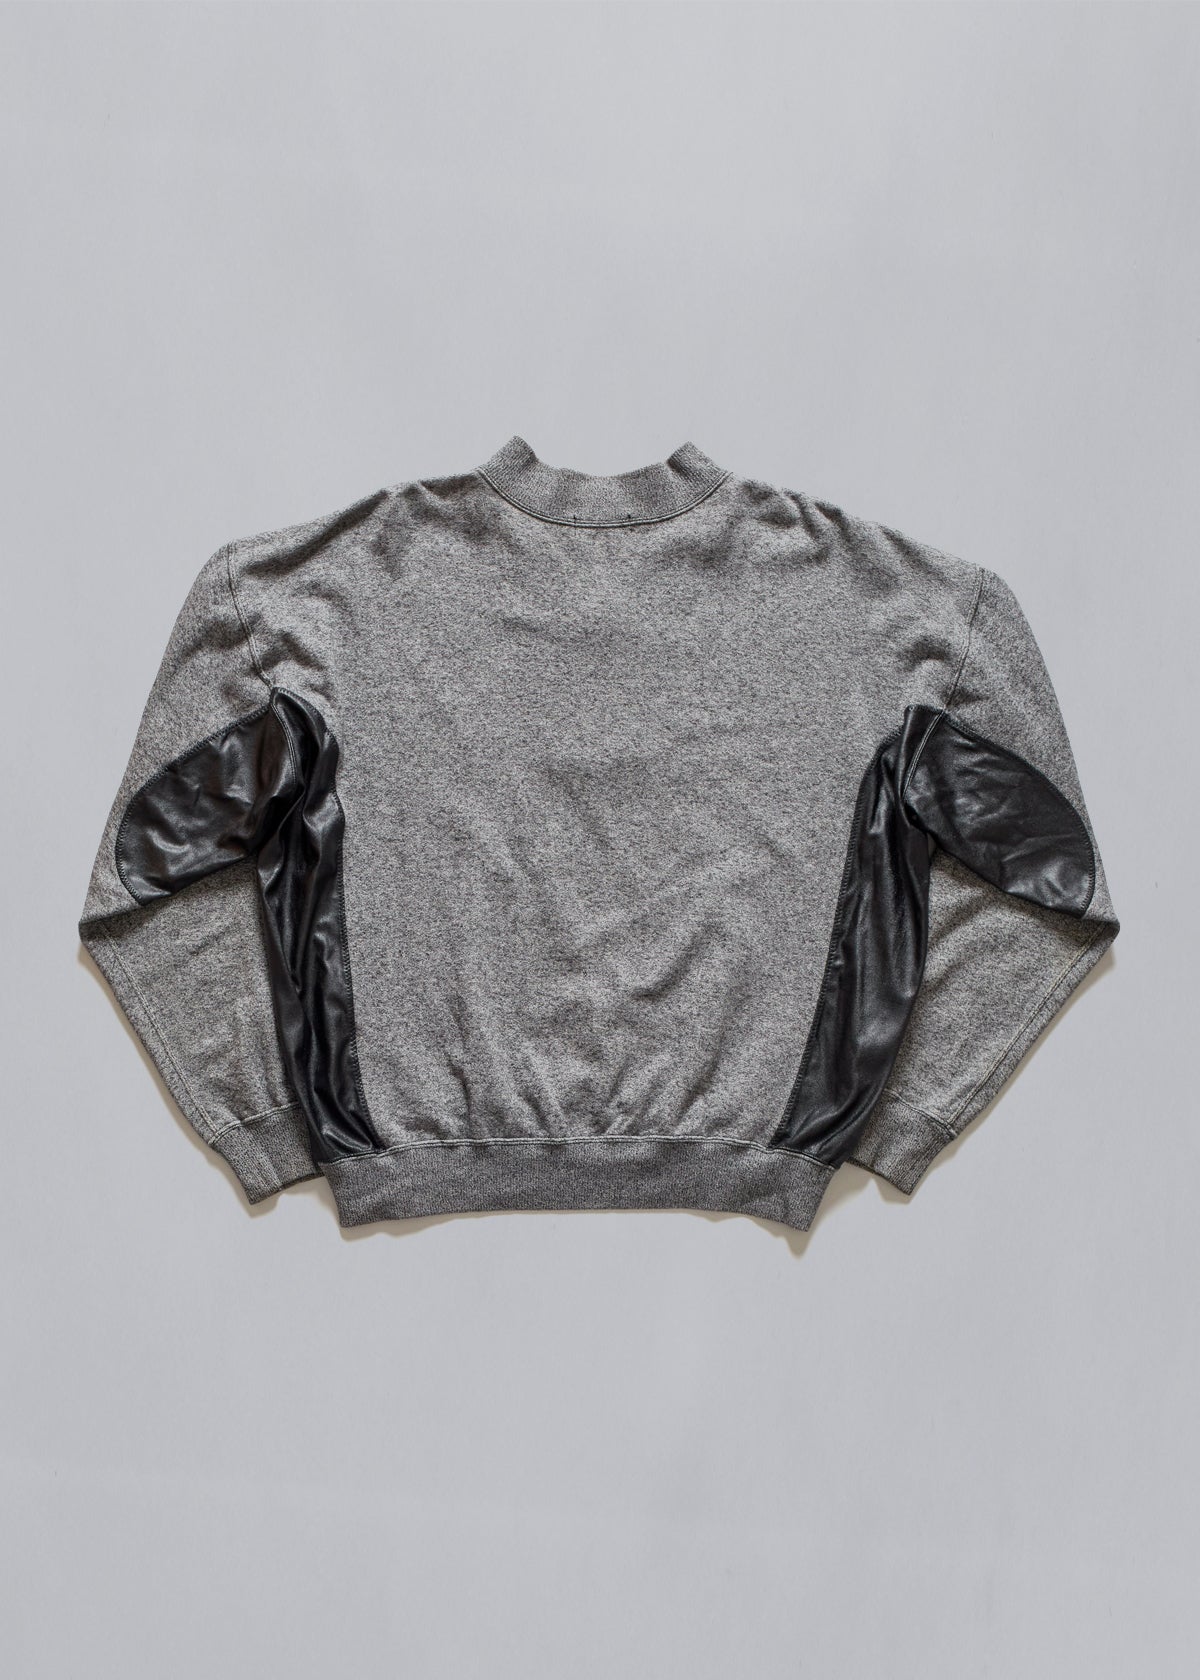 Quarter Zip Sweatshirt 2000's - Medium - The Archivist Store